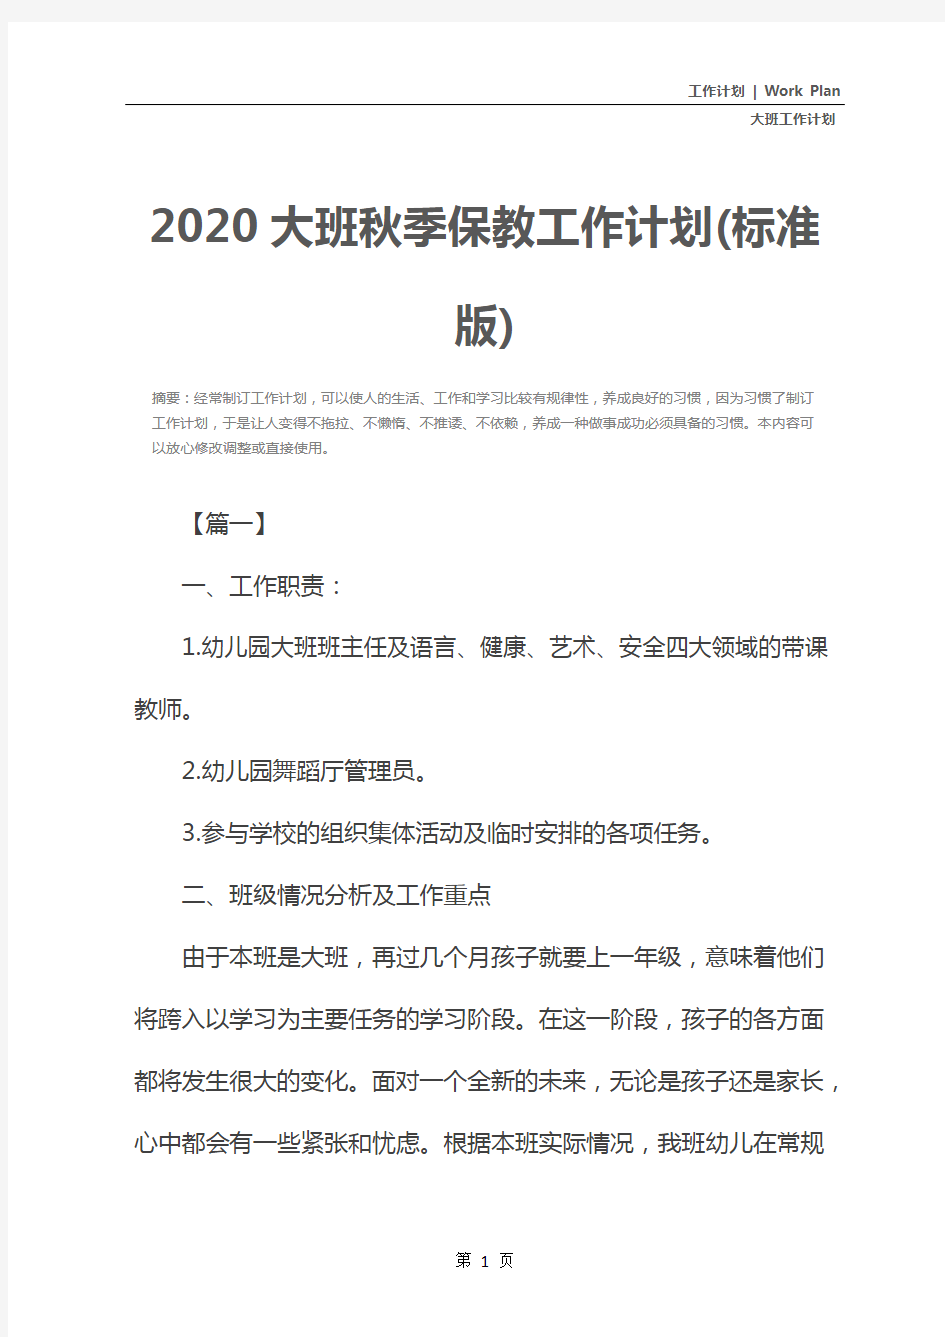 2020大班秋季保教工作计划(标准版)